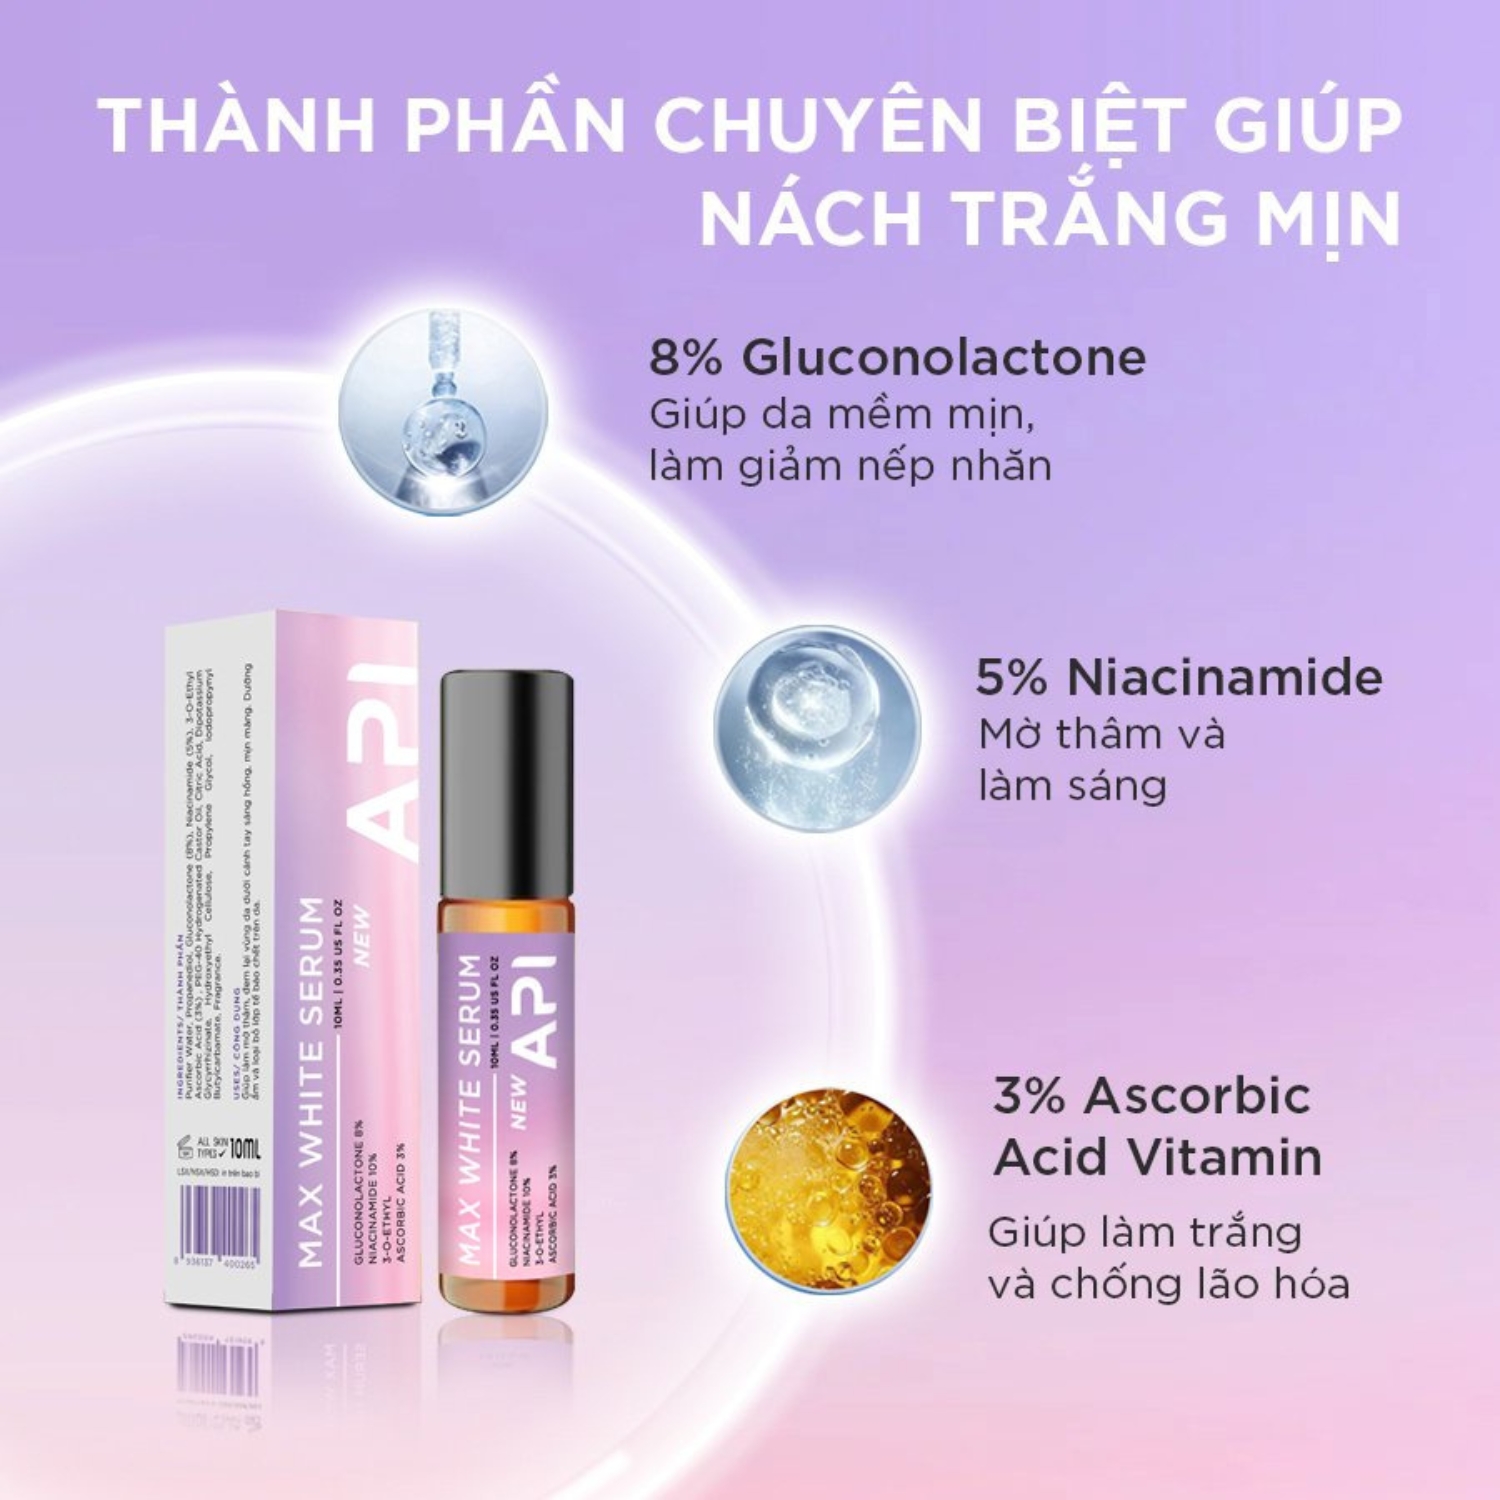 Lăn Nách API Giảm Thâm - Son Nách Mee Natural Làm Trắng Khử Mùi Hôi Cho Nam Và Nữ 10ml